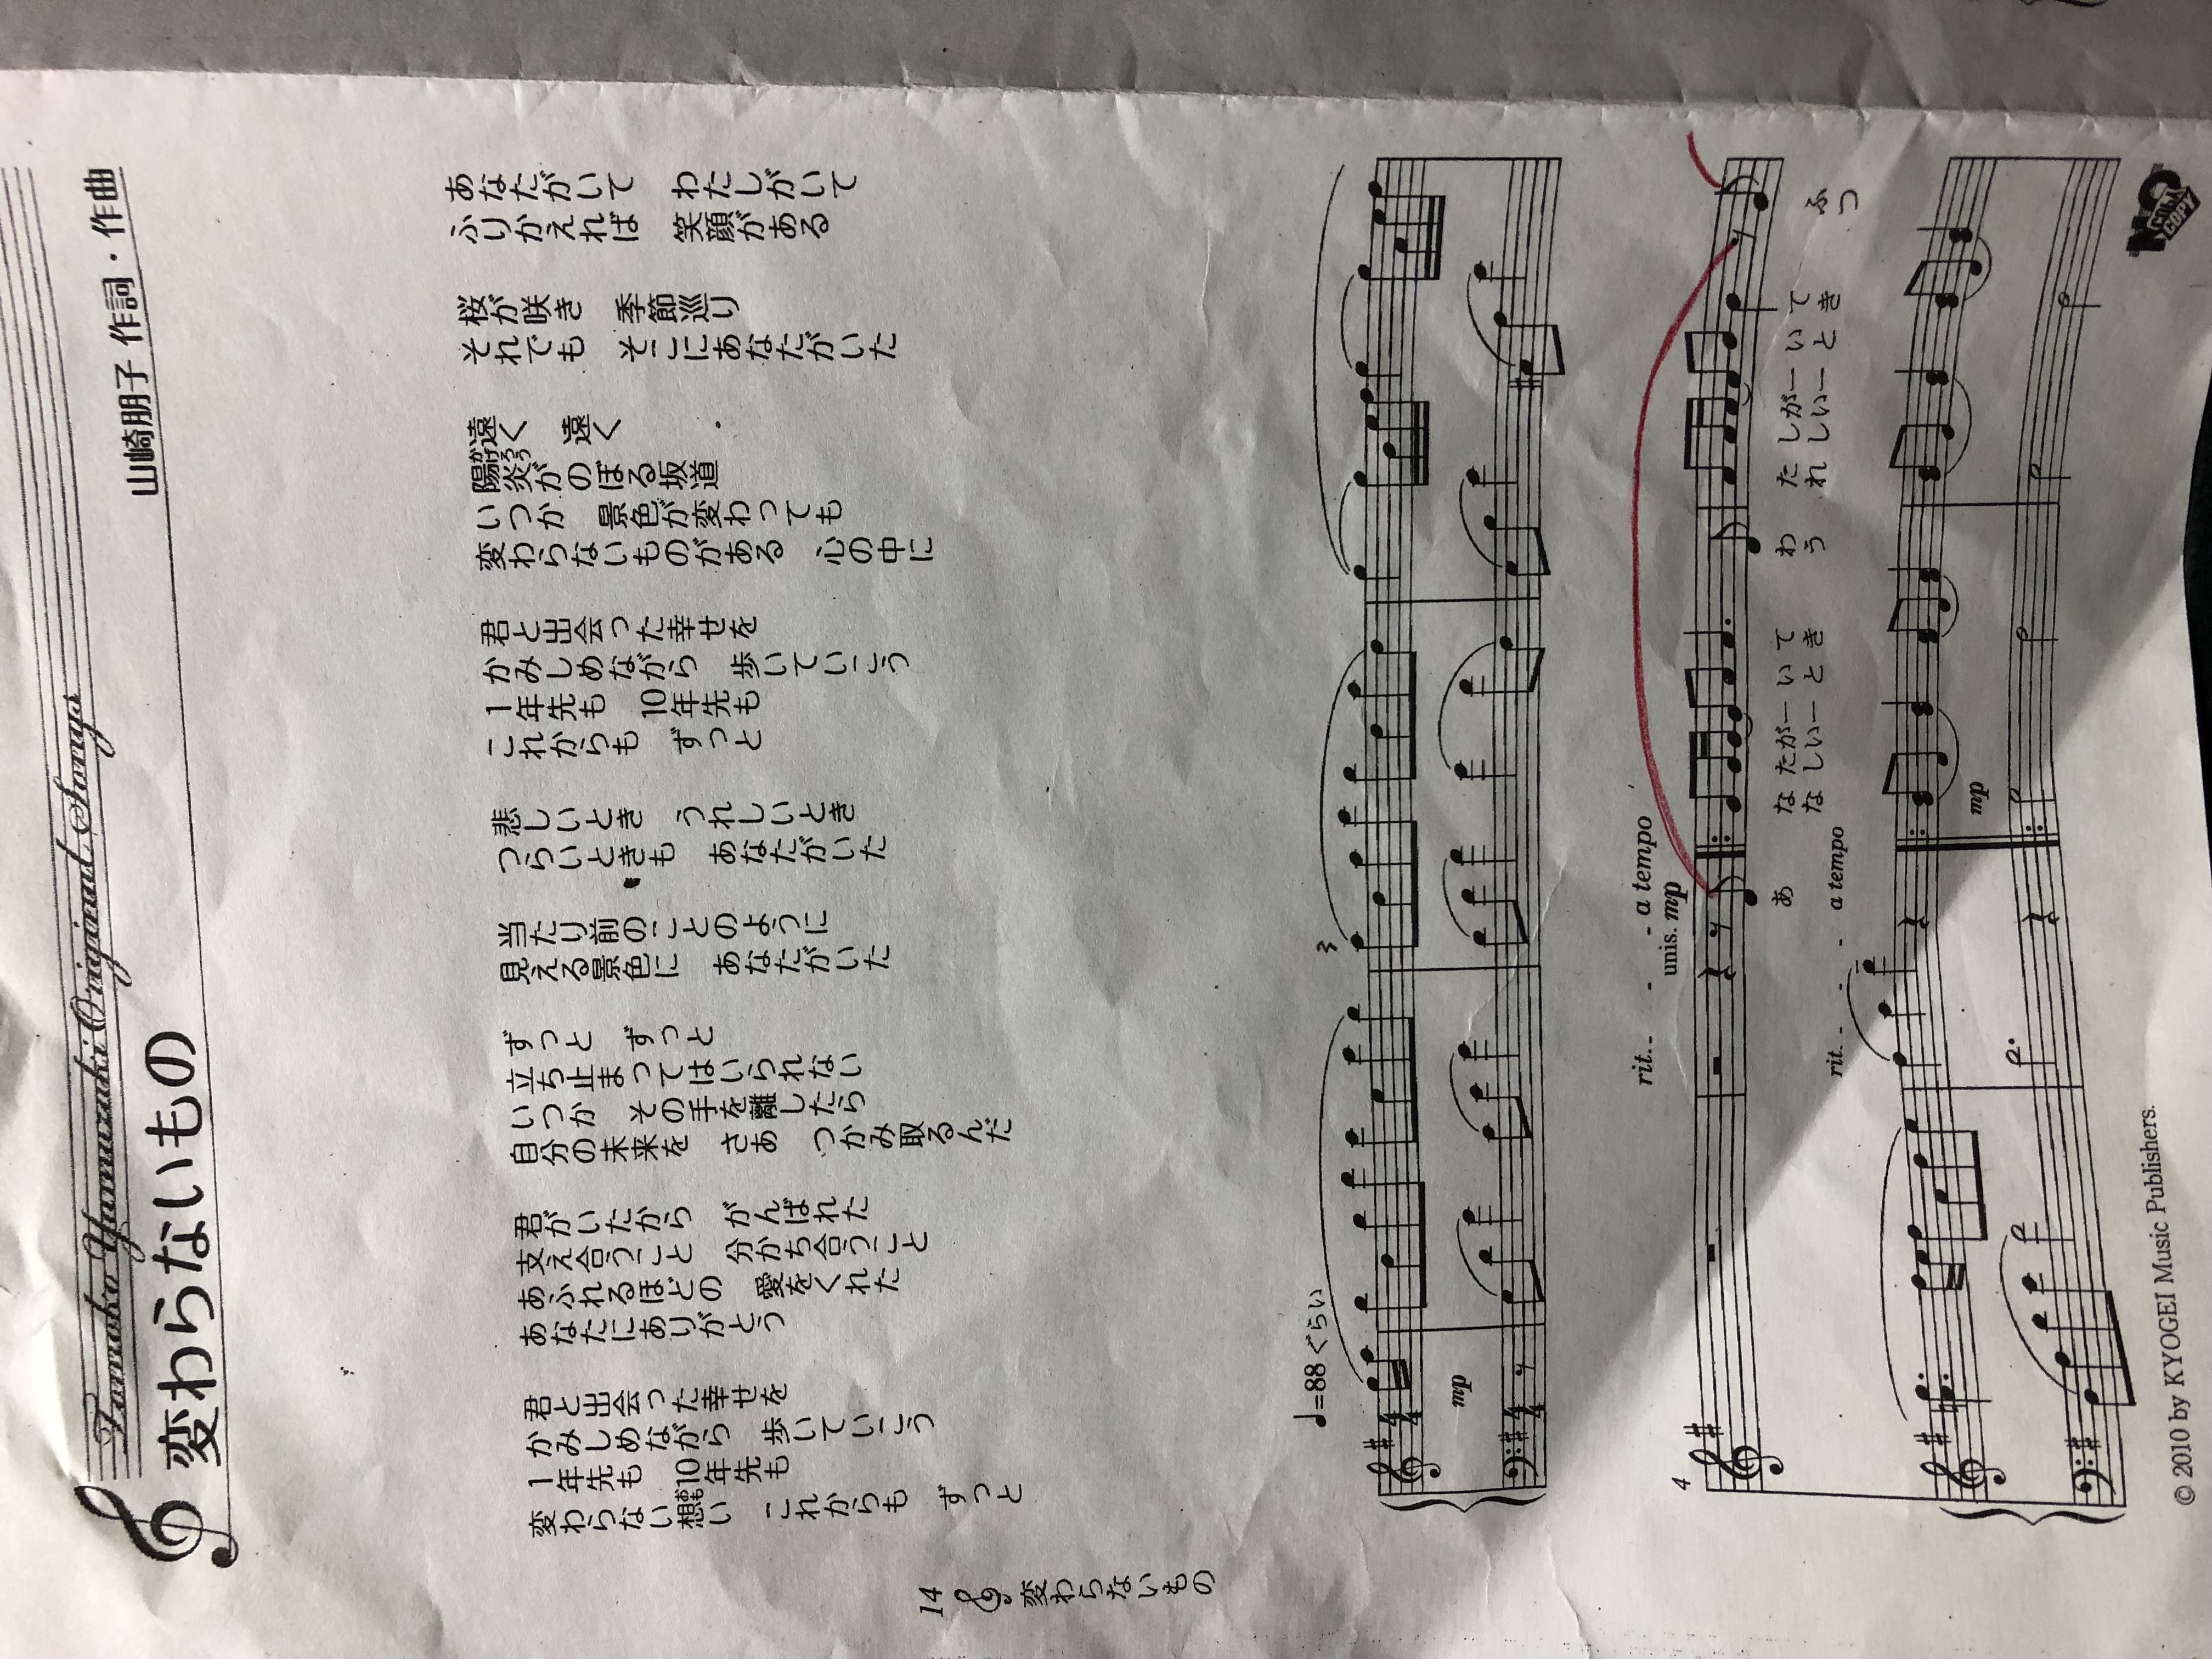 合唱の伴奏 町田市鶴川 金井のピアノ教室に関するブログです